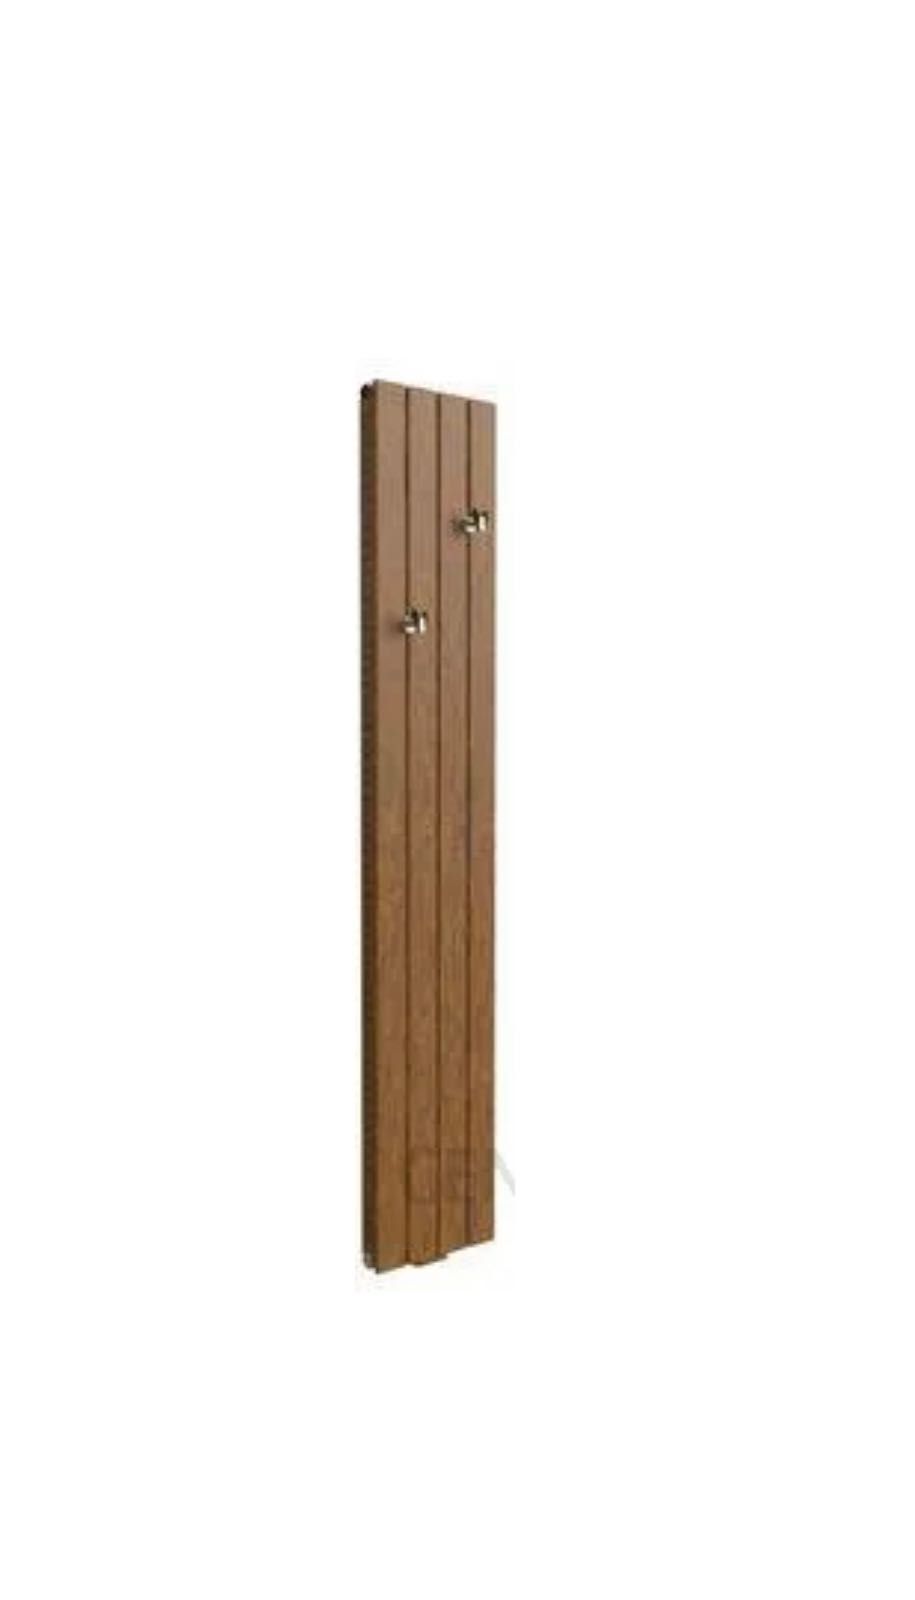 Grzejnik dekoracyjny łazienkowy drewno drewniany ALTUS AVV GORGIEL NEW